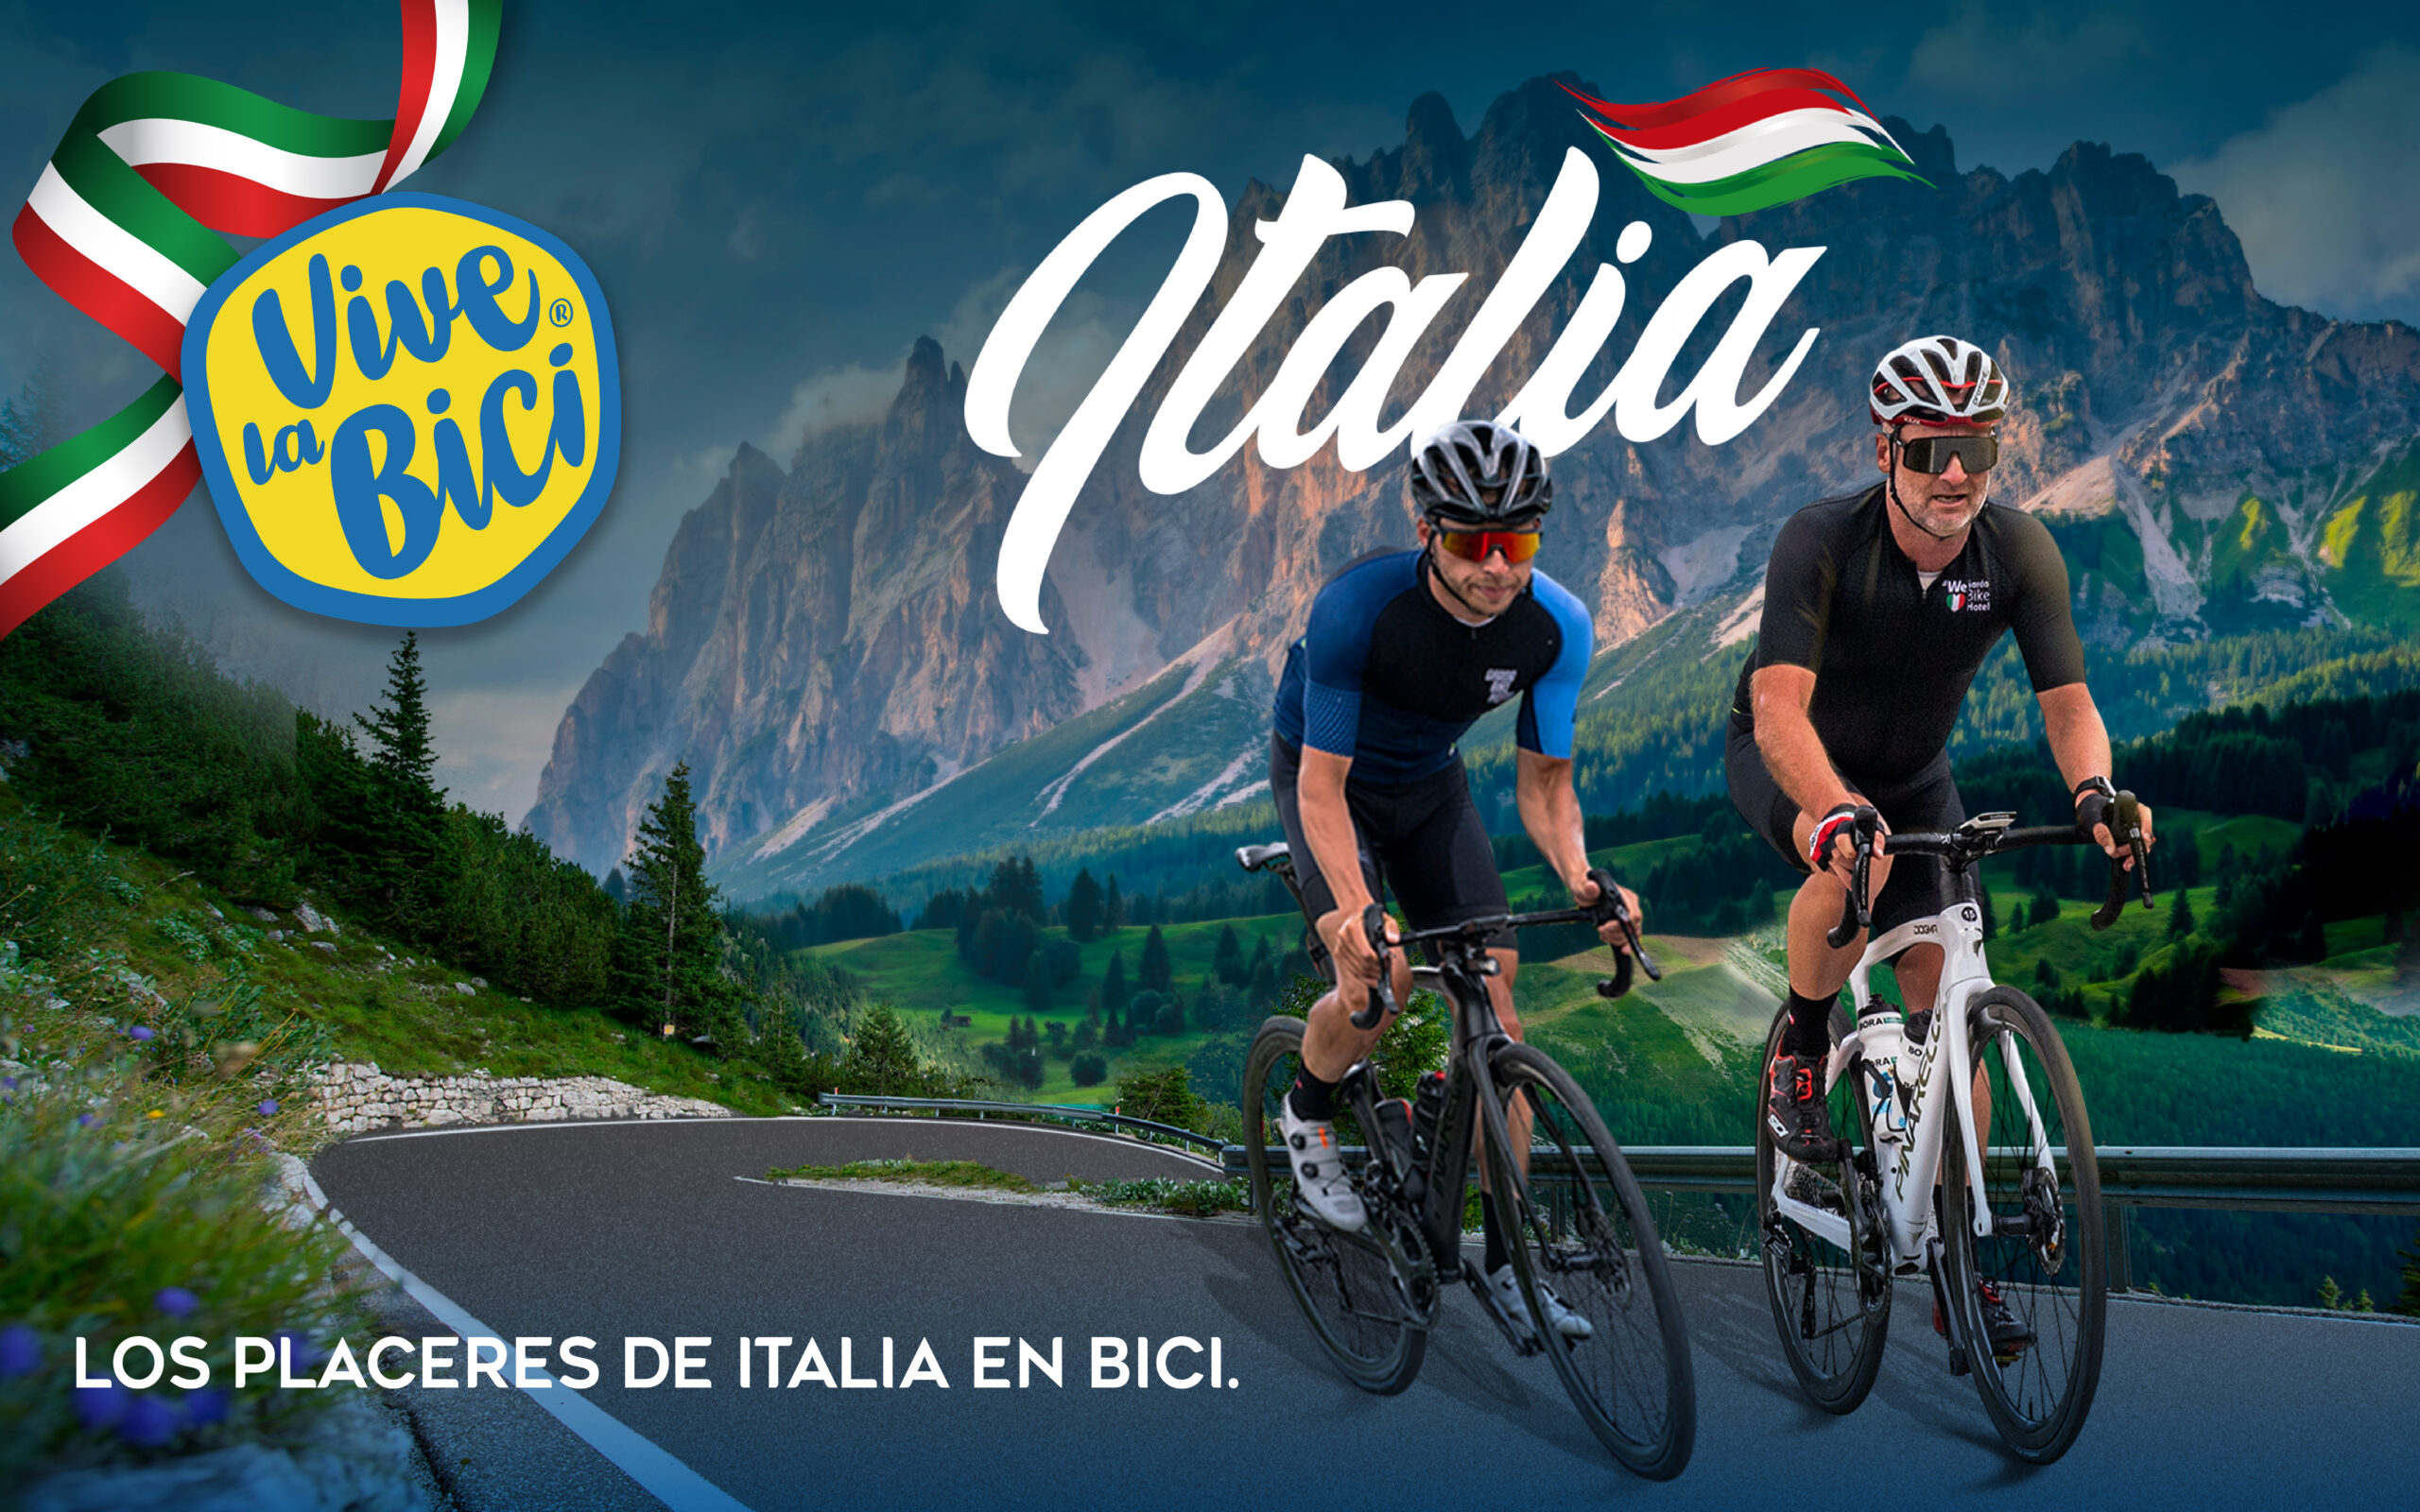 Publicación promocional de ciclistas Vive la Bici en Italia